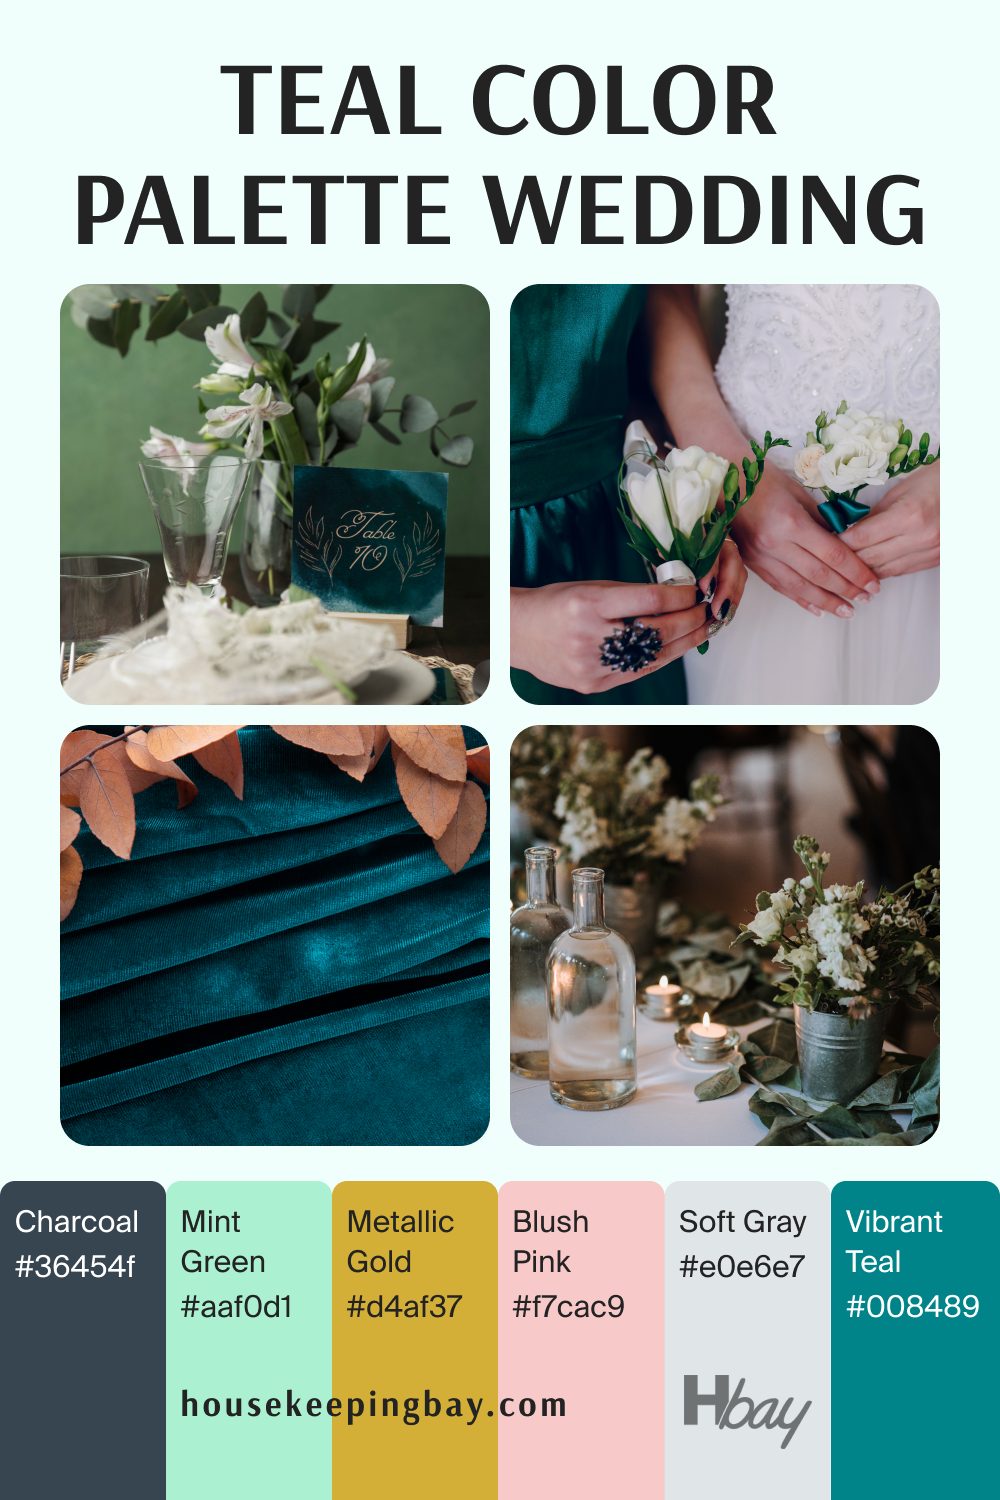 Teal color palette wedding